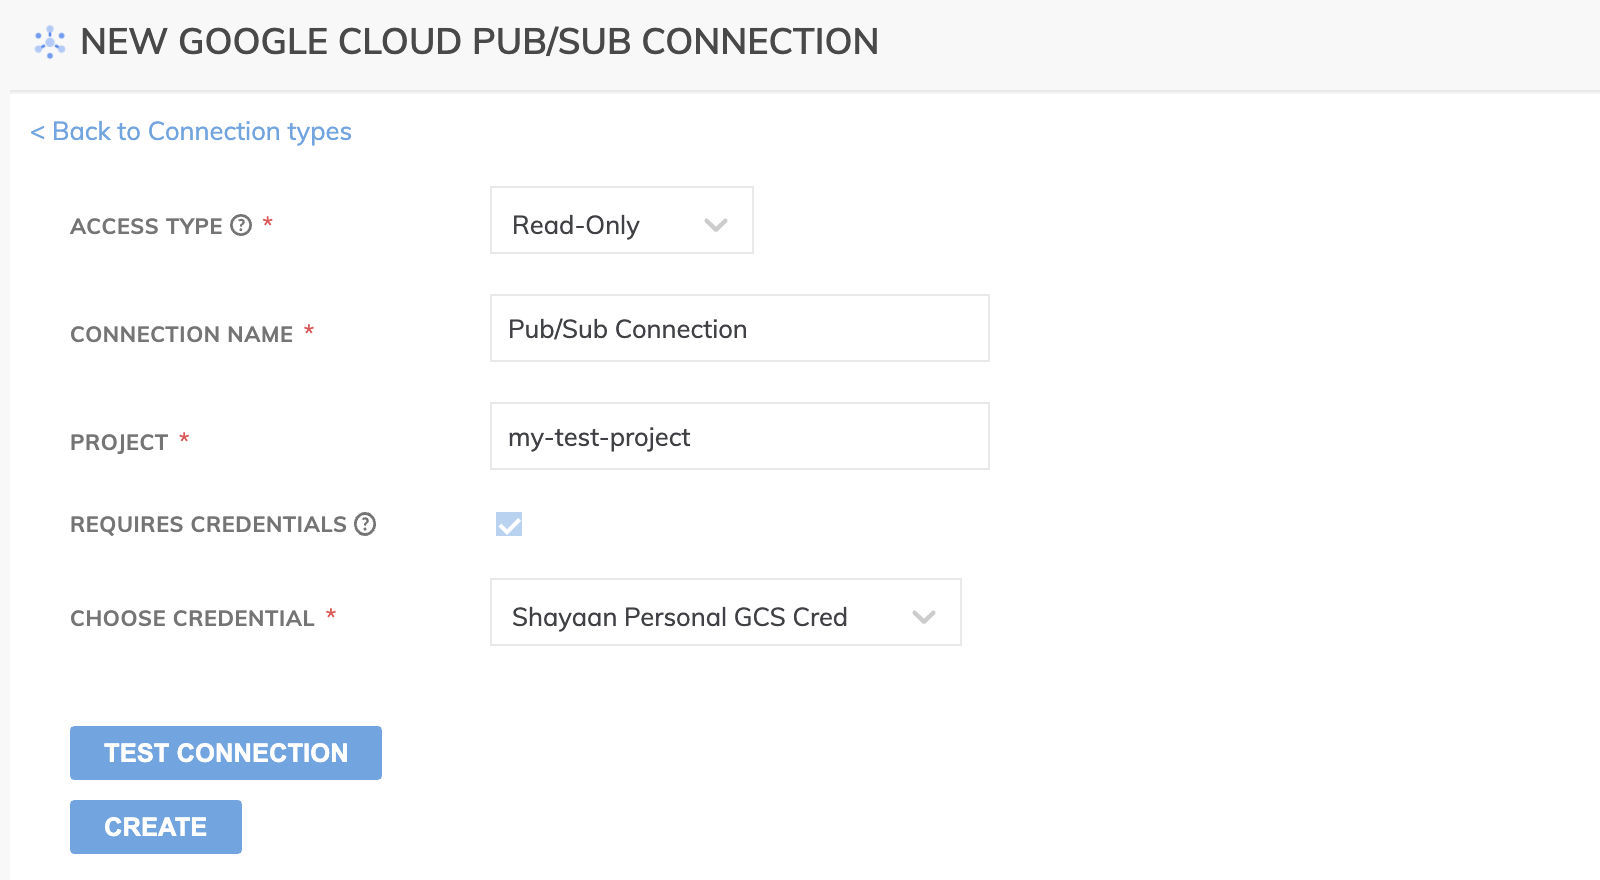 Configuration options for a Google Cloud Pub/Sub connection